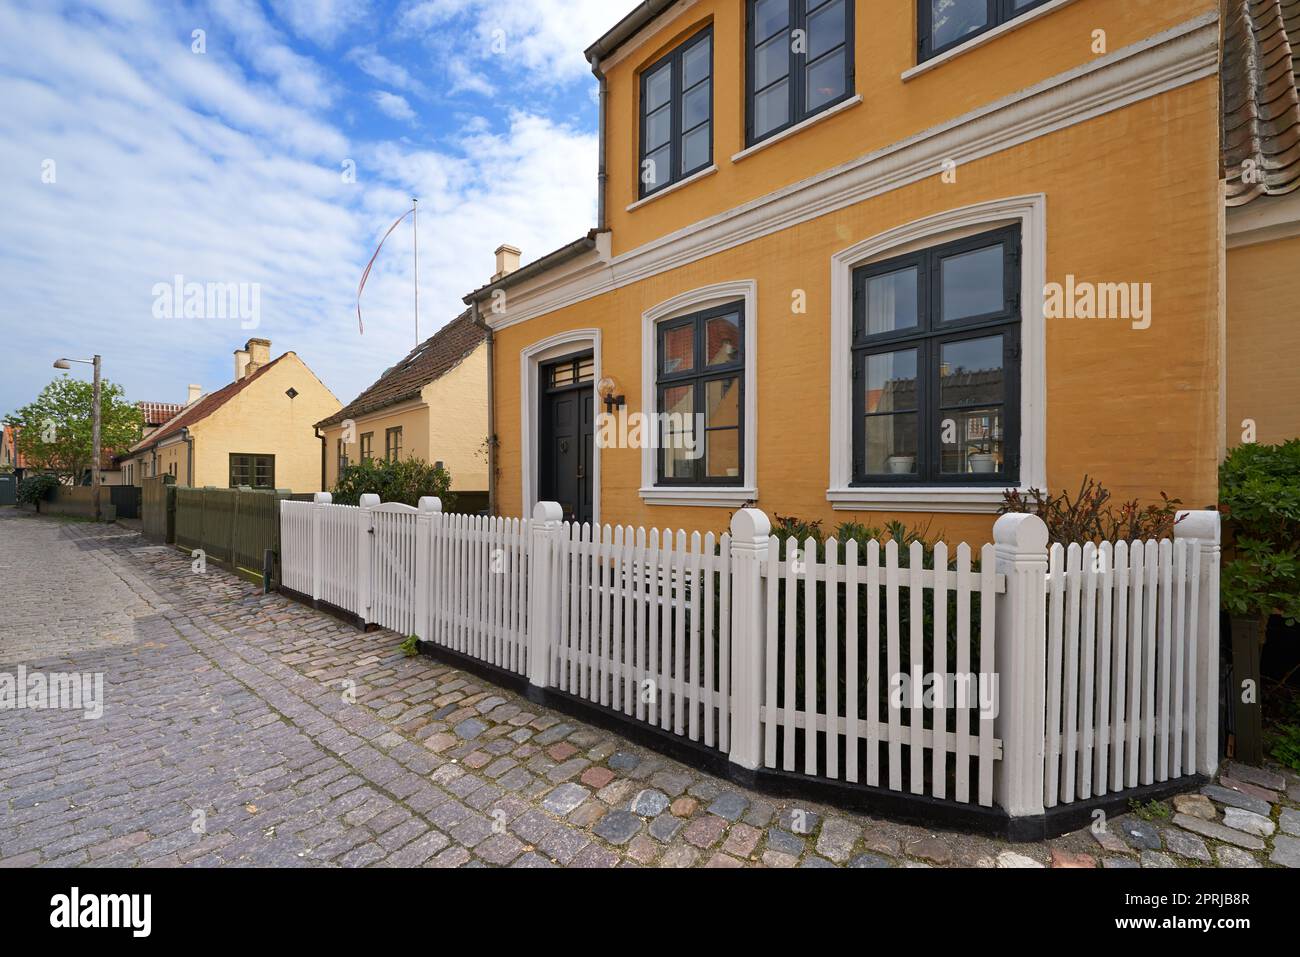 Historische Architektur von Dragor. Olld Häuser in der historischen Stadt Dragoer, Kopenhagen, Dänemark Stockfoto